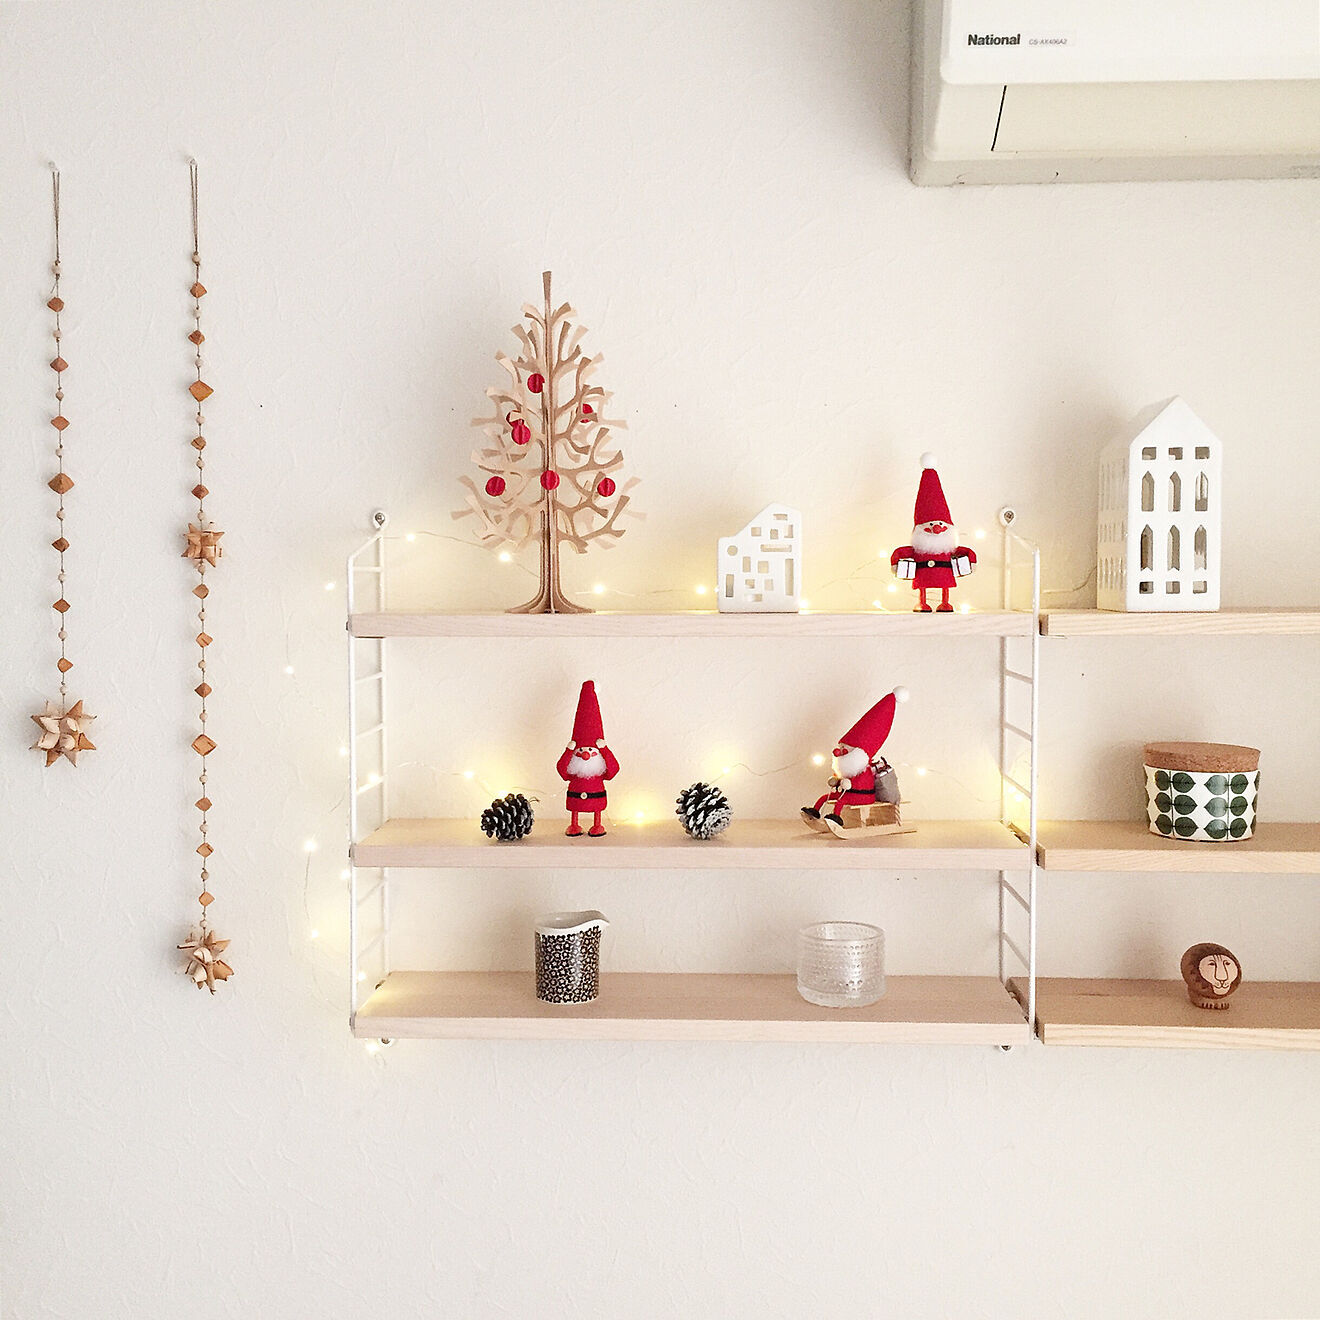 おしゃれなクリスマス雑貨と飾り方アイデア集。北欧風や手作りできる実例も